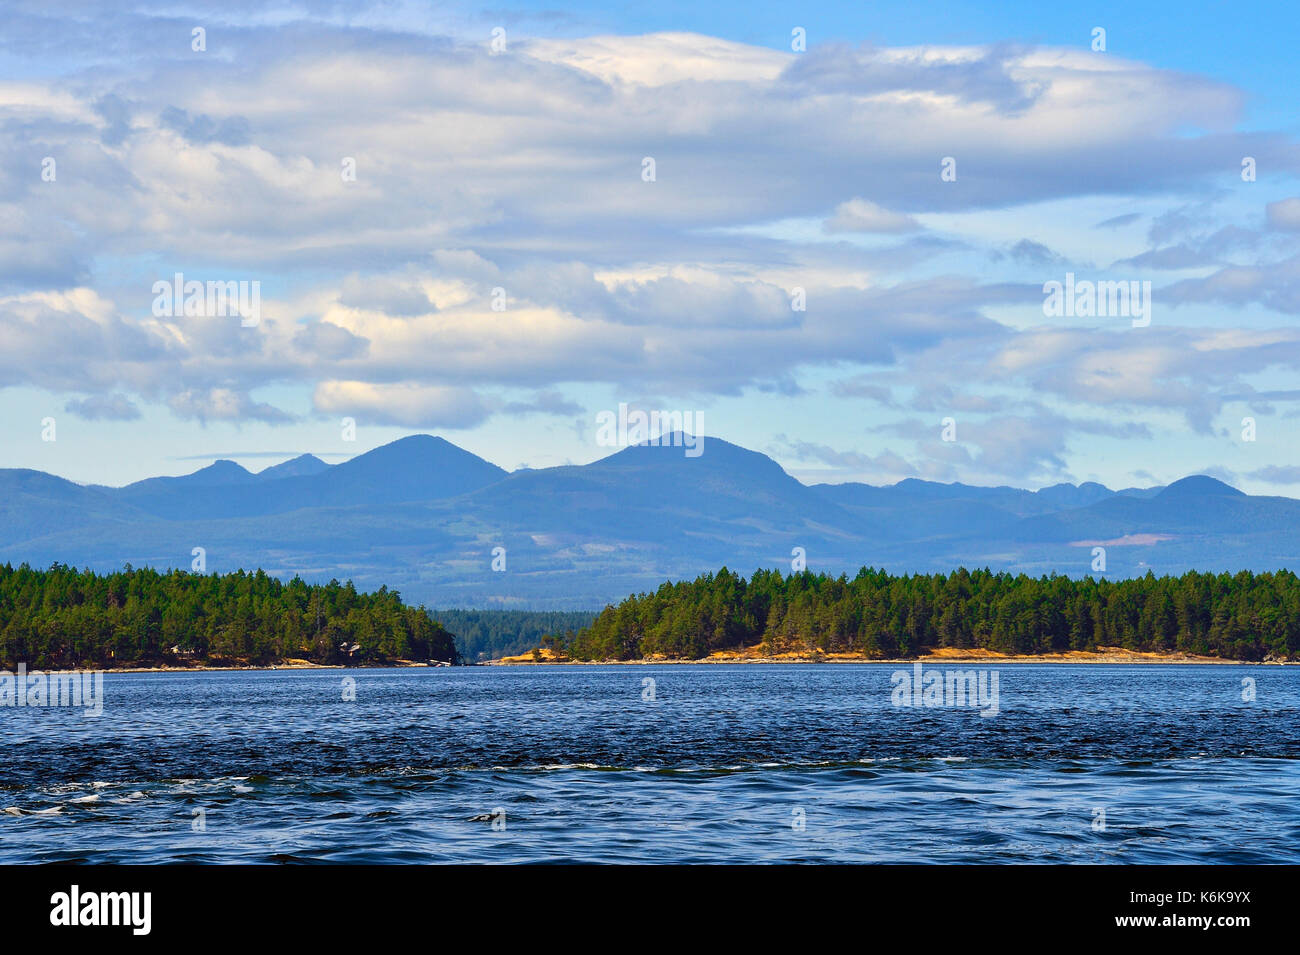 Un paesaggio orizzontale dell'Isola di Vancouver che guarda indietro verso le montagne boscose da una barca che viaggia nello stretto della Georgia sulla costa occidentale del British Columbia. Foto Stock